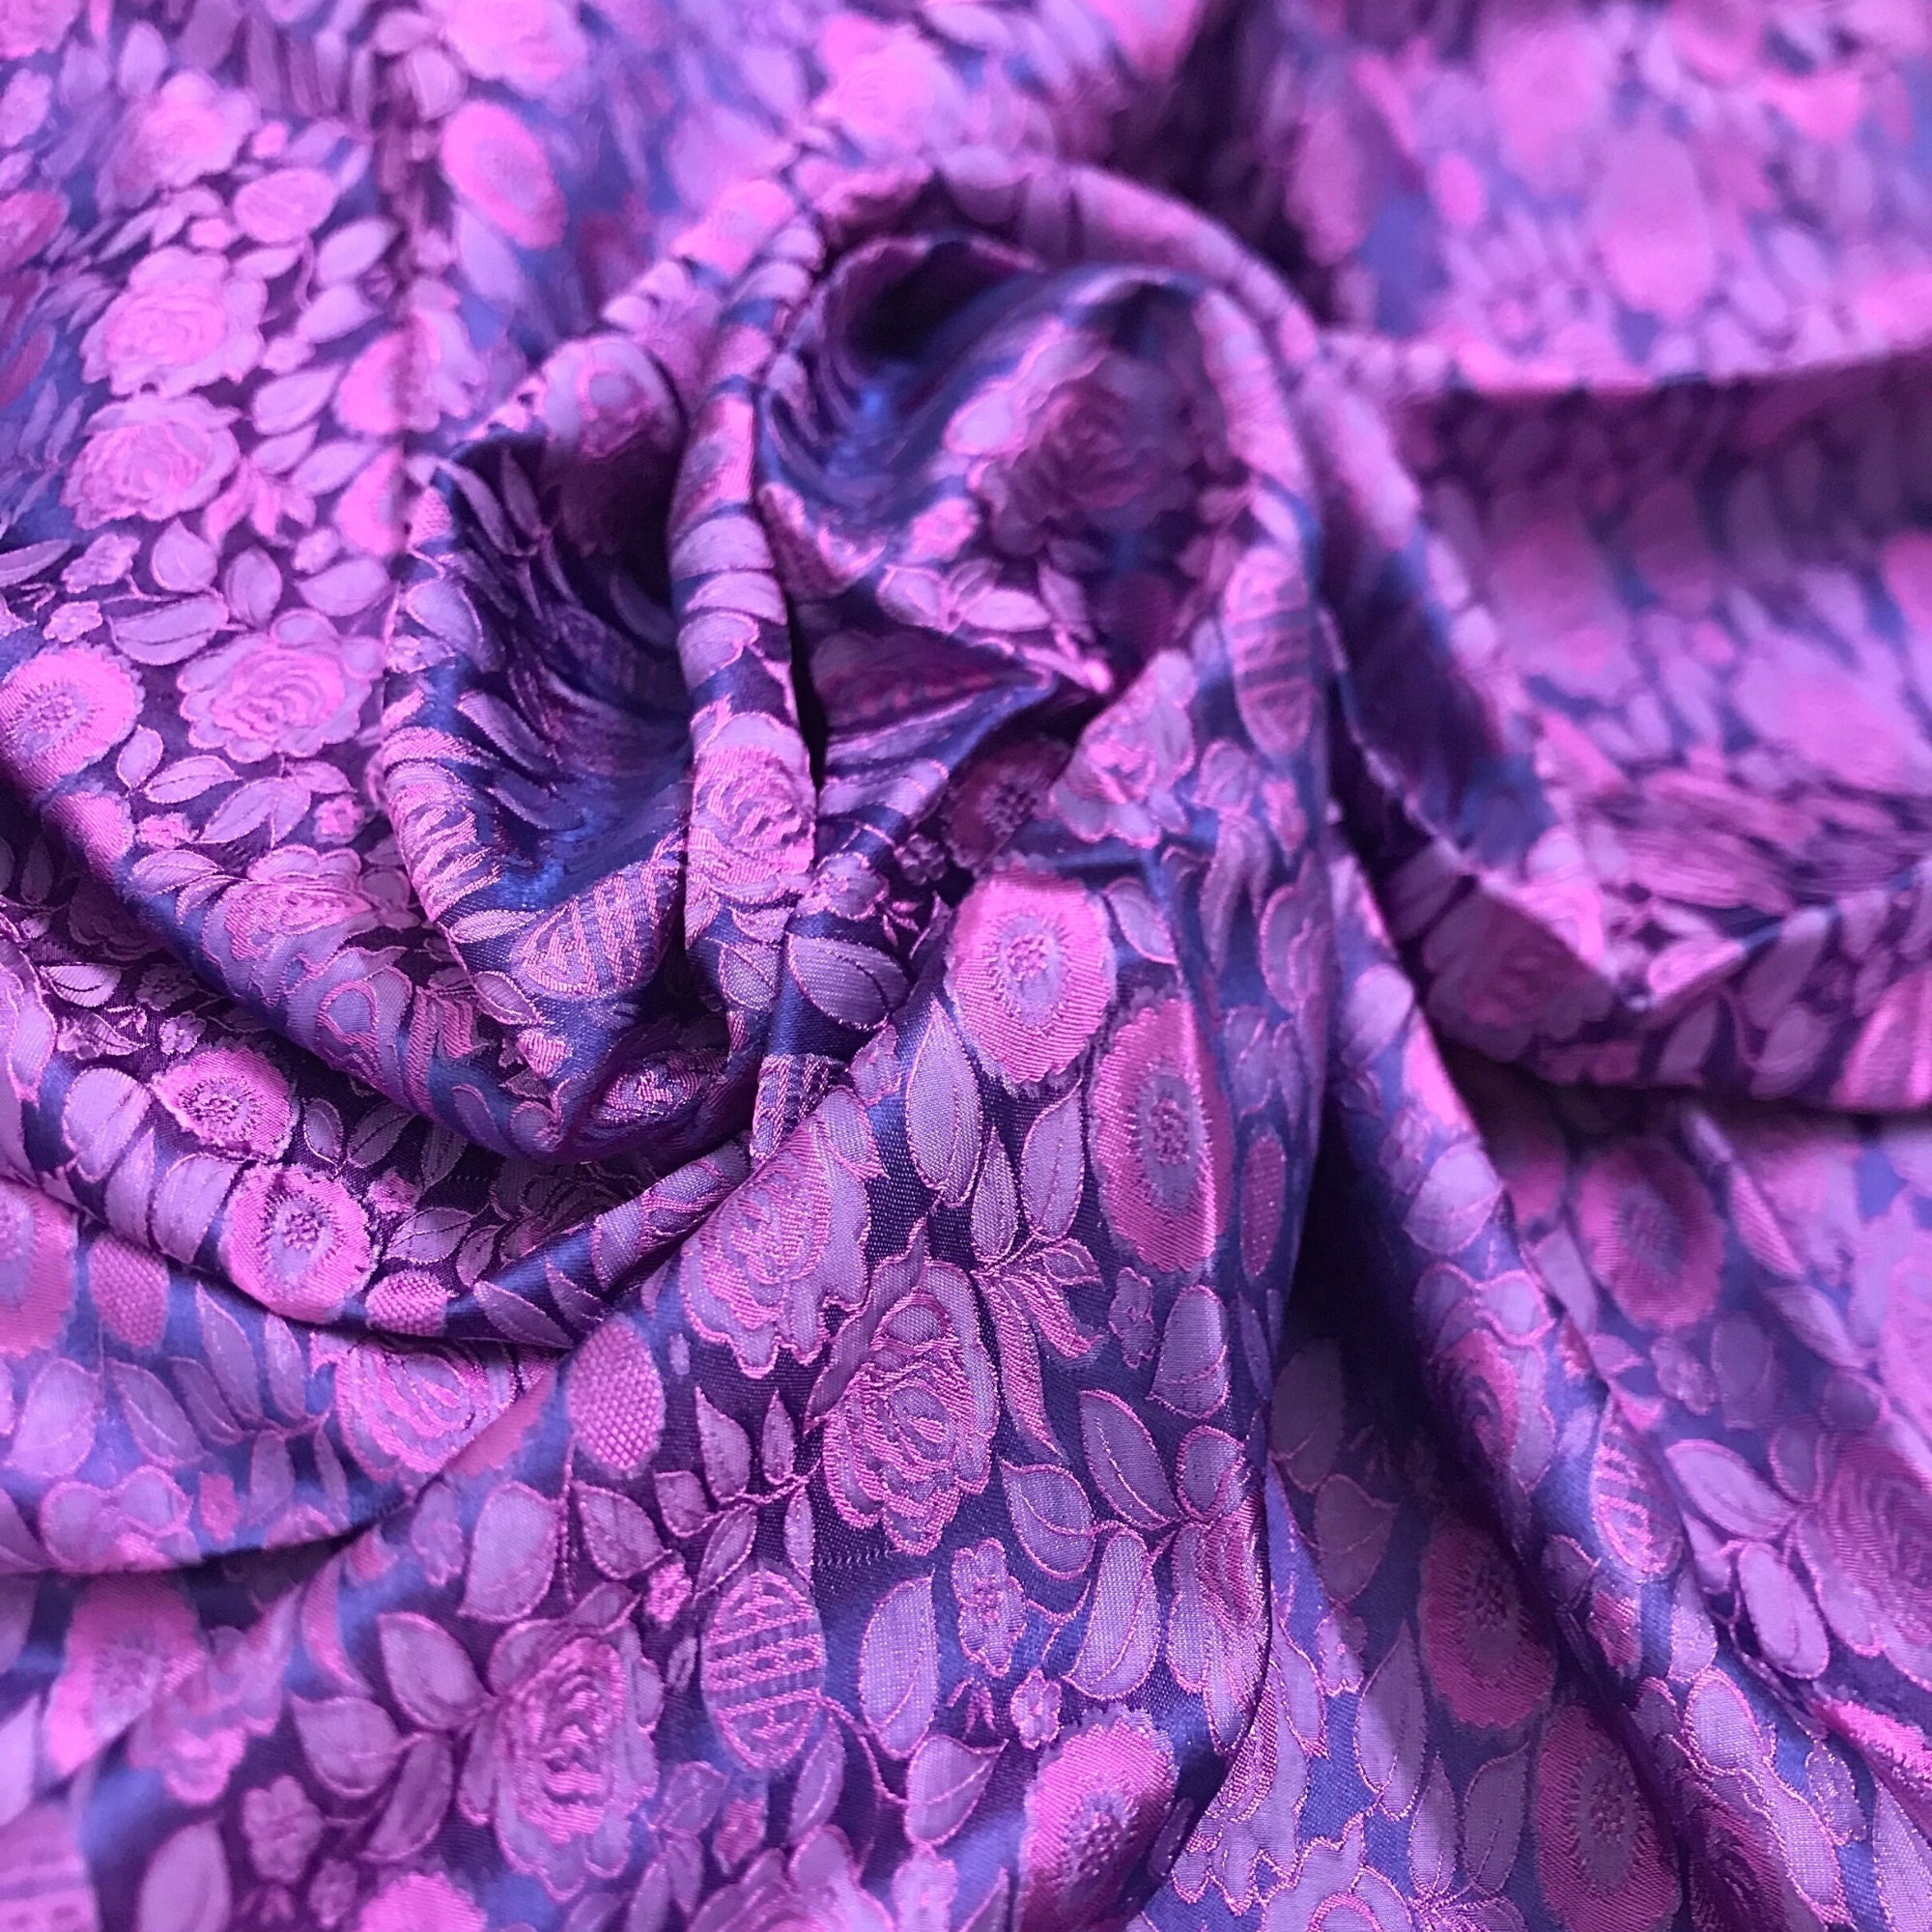 Vải Lụa Tơ Tằm hồng thọ màu tím, mềm#mượt#mịn, dệt thủ công, khổ vải 90cm